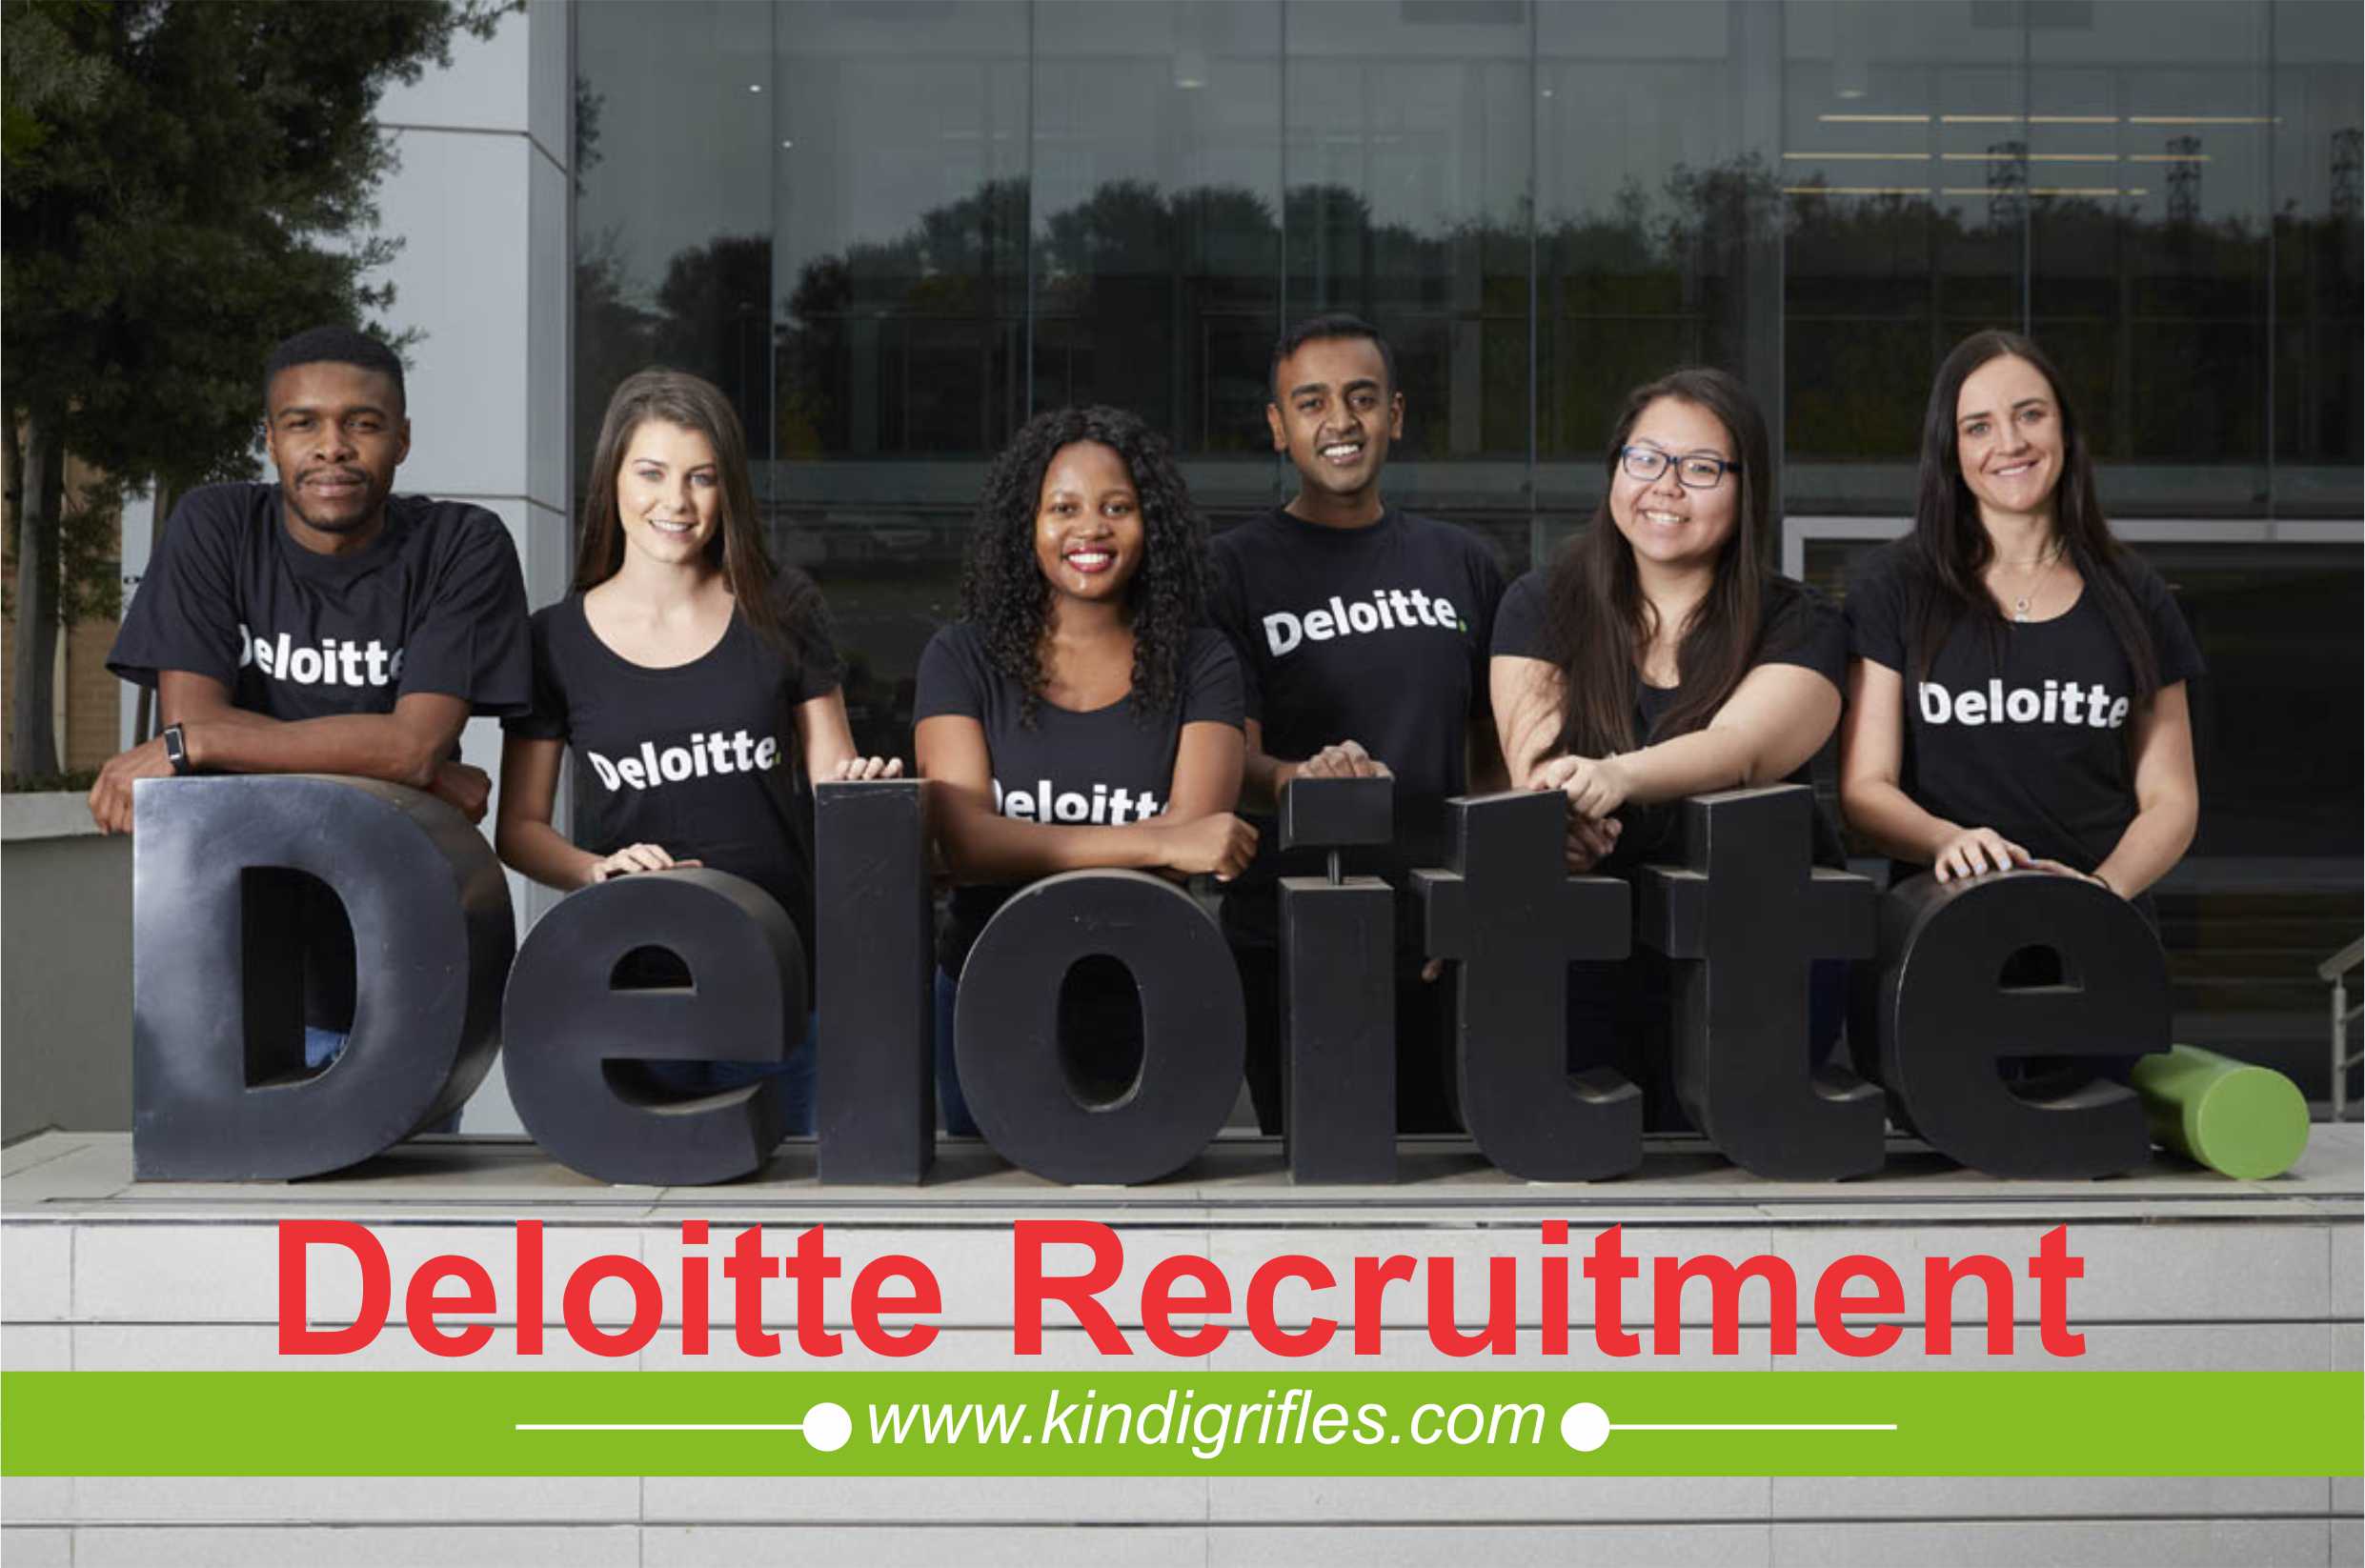 Deloitte recruitment